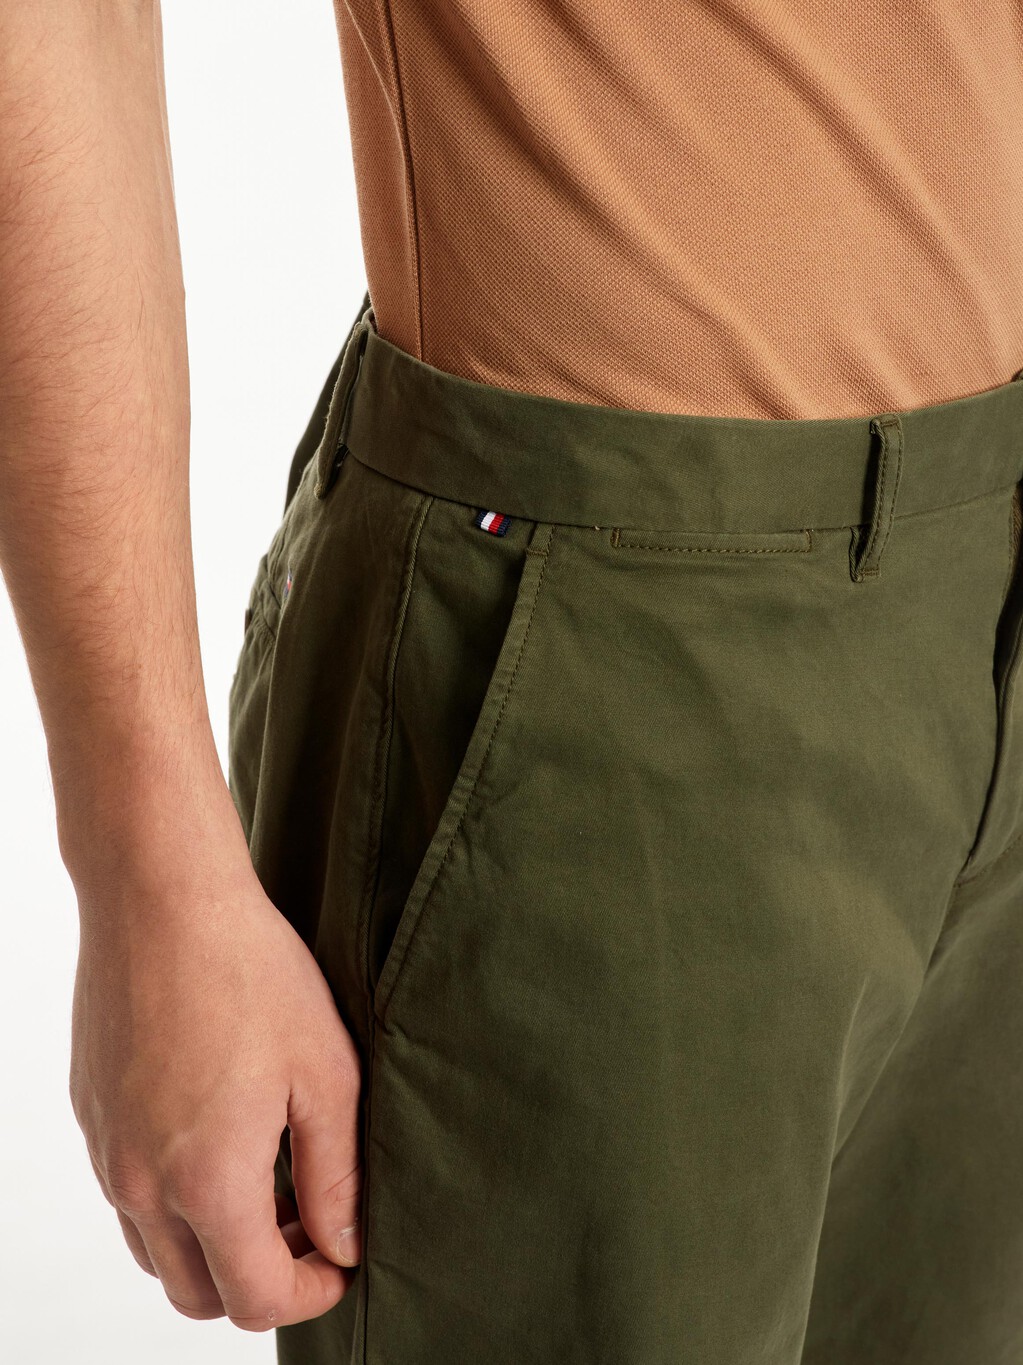 1985 系列 Brooklyn 斜紋短褲, Army Green, hi-res